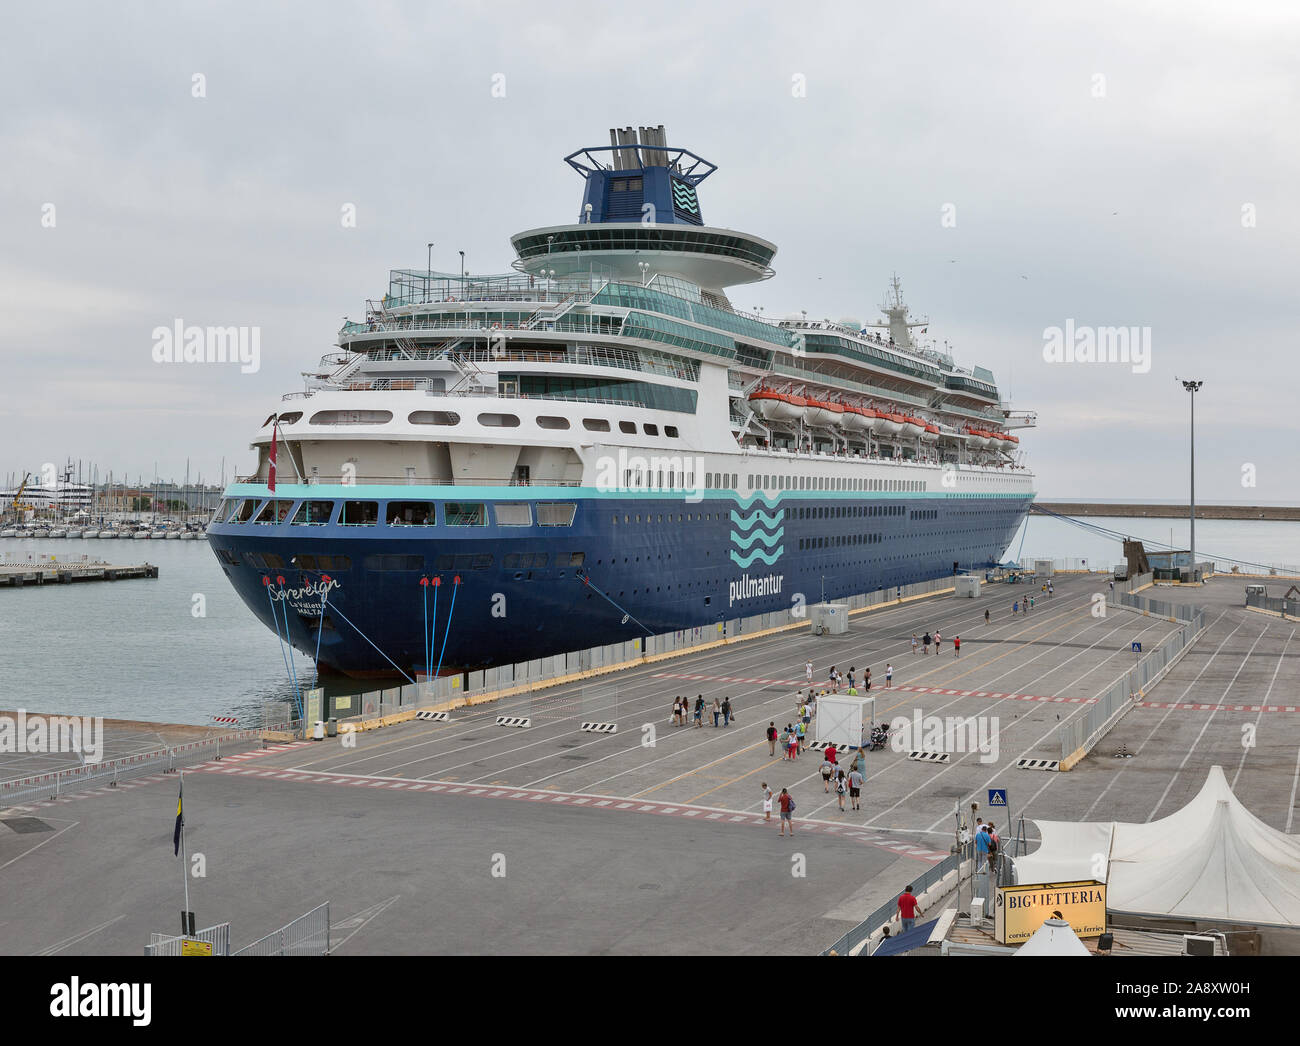 LIVORNO, Italia - 11 de julio, 2019: Los pasajeros a bordo del crucero de  lujo soberano amarrados en el puerto. MS soberano es uno de los tres  grandes cruceros Sovere Fotografía de stock - Alamy